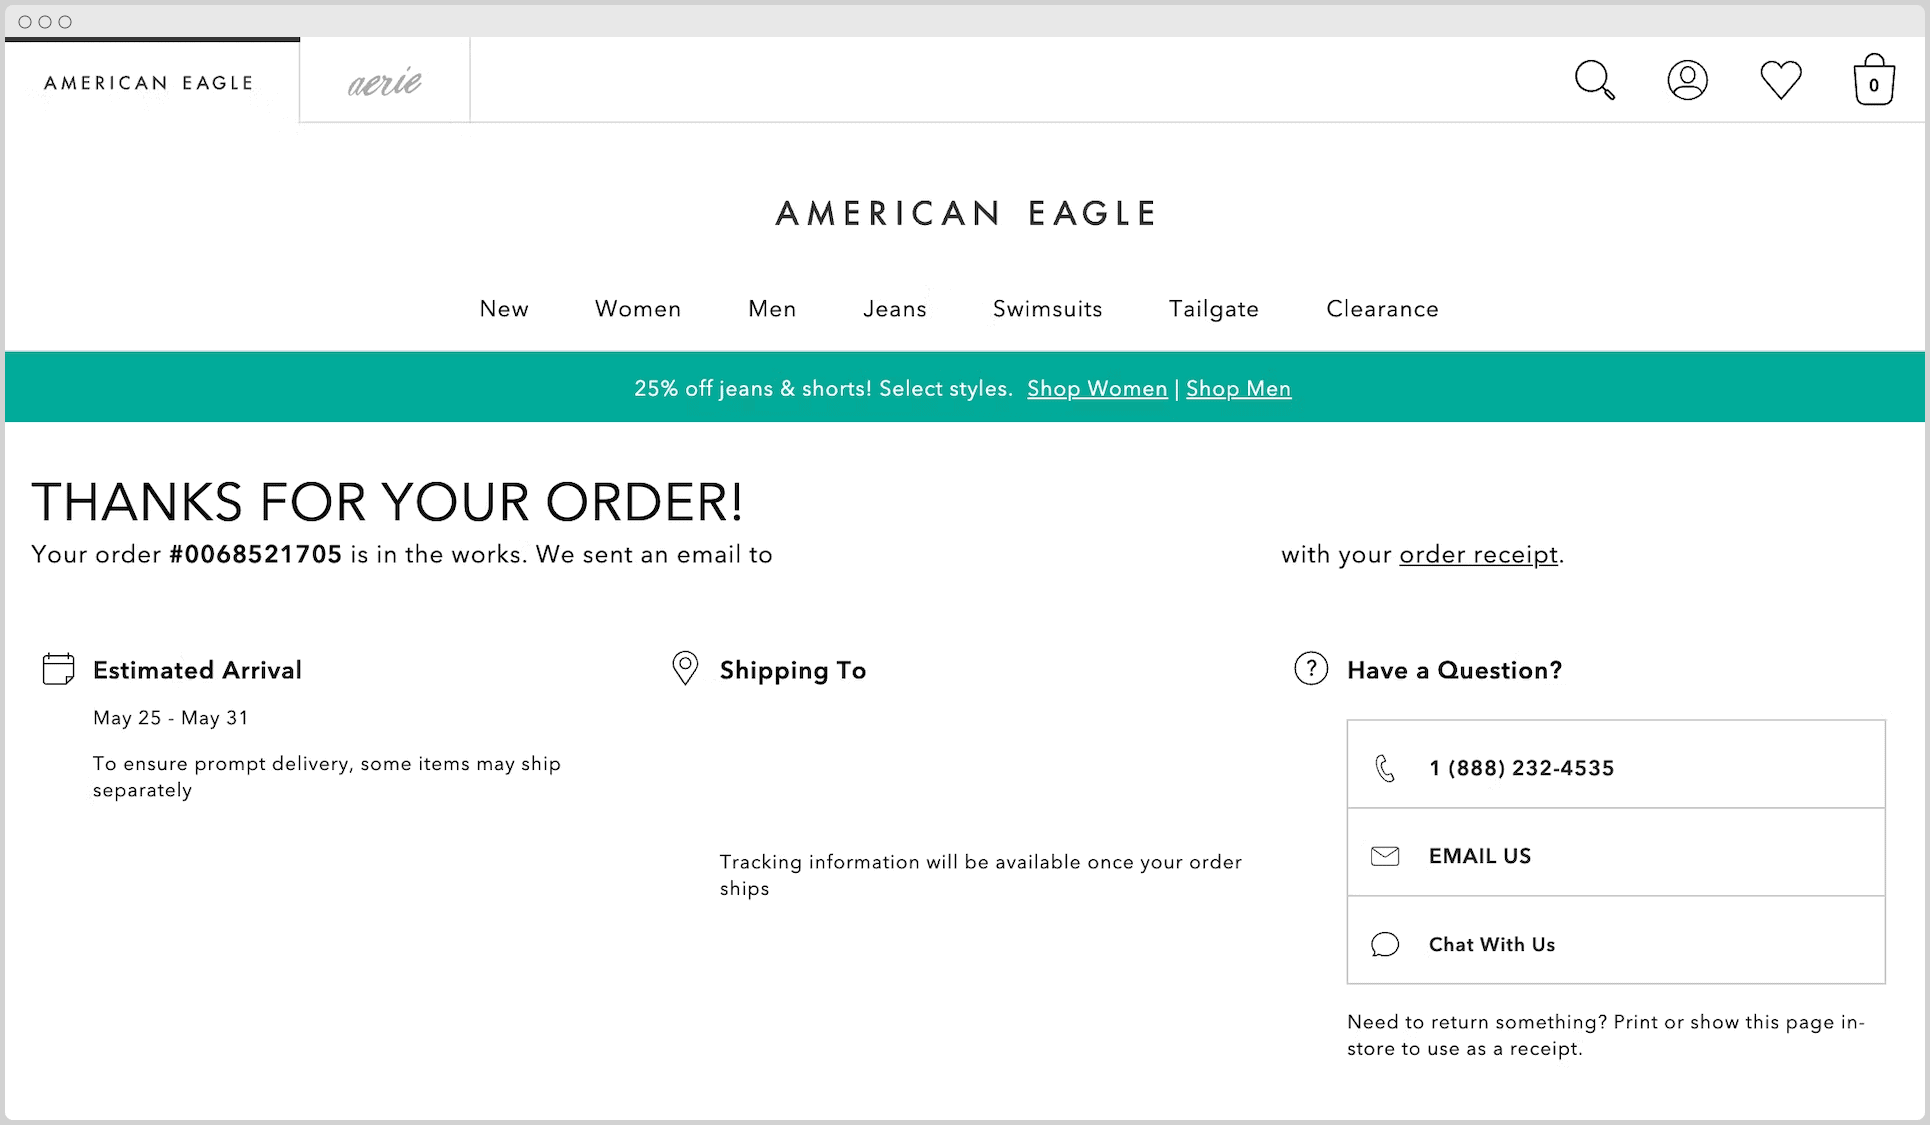 American Eagle eCommerce صفحة الشكر